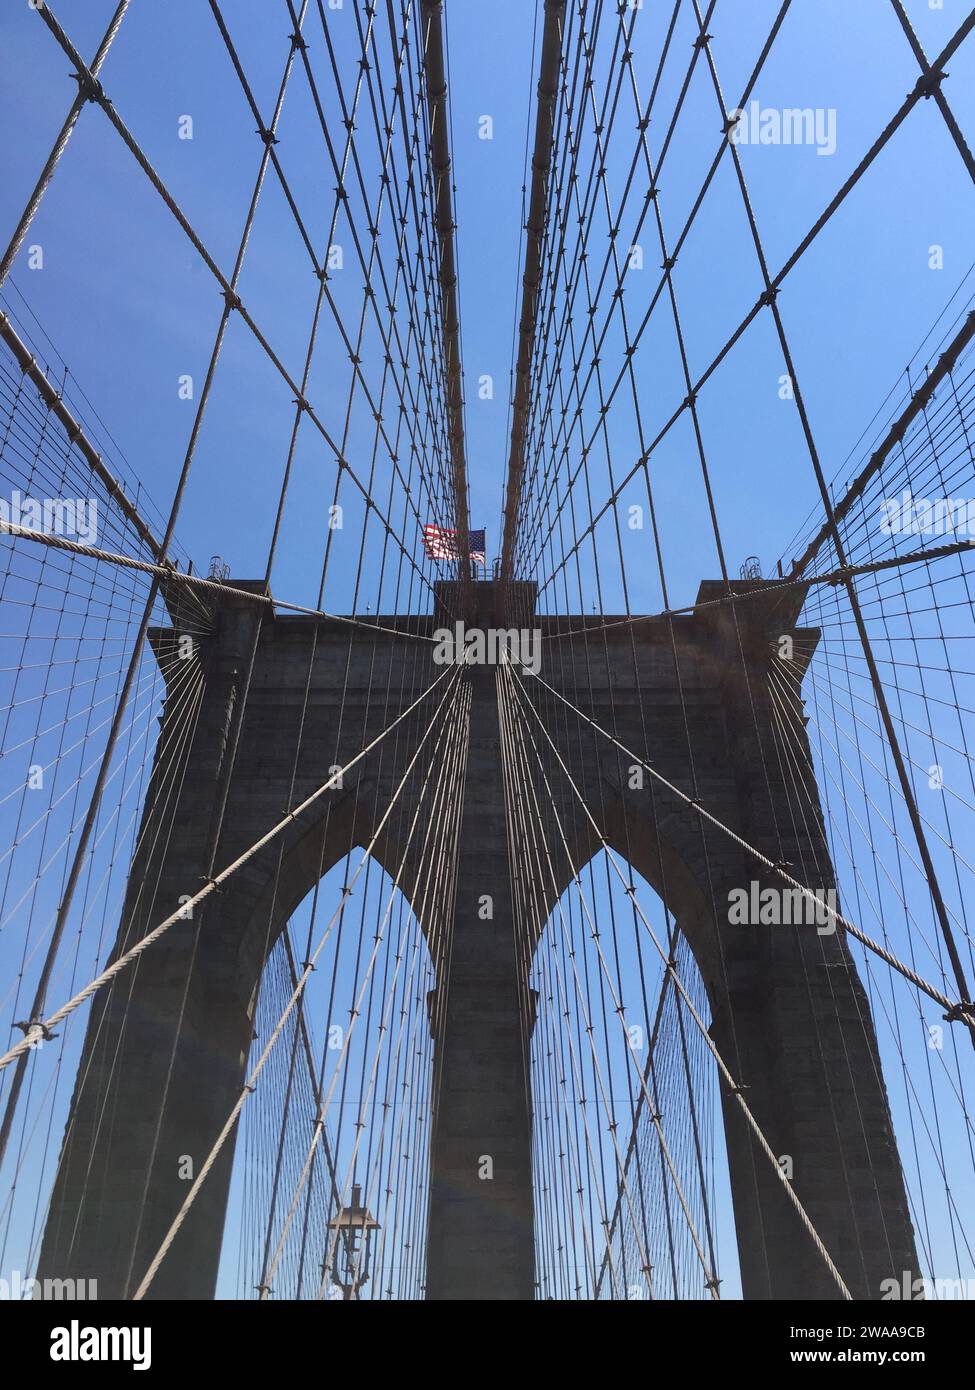 Le pont de Brooklyn s'étend au-dessus, ses câbles emblématiques formant un motif frappant contre le ciel bleu, couronné par le drapeau américain flottant. Banque D'Images